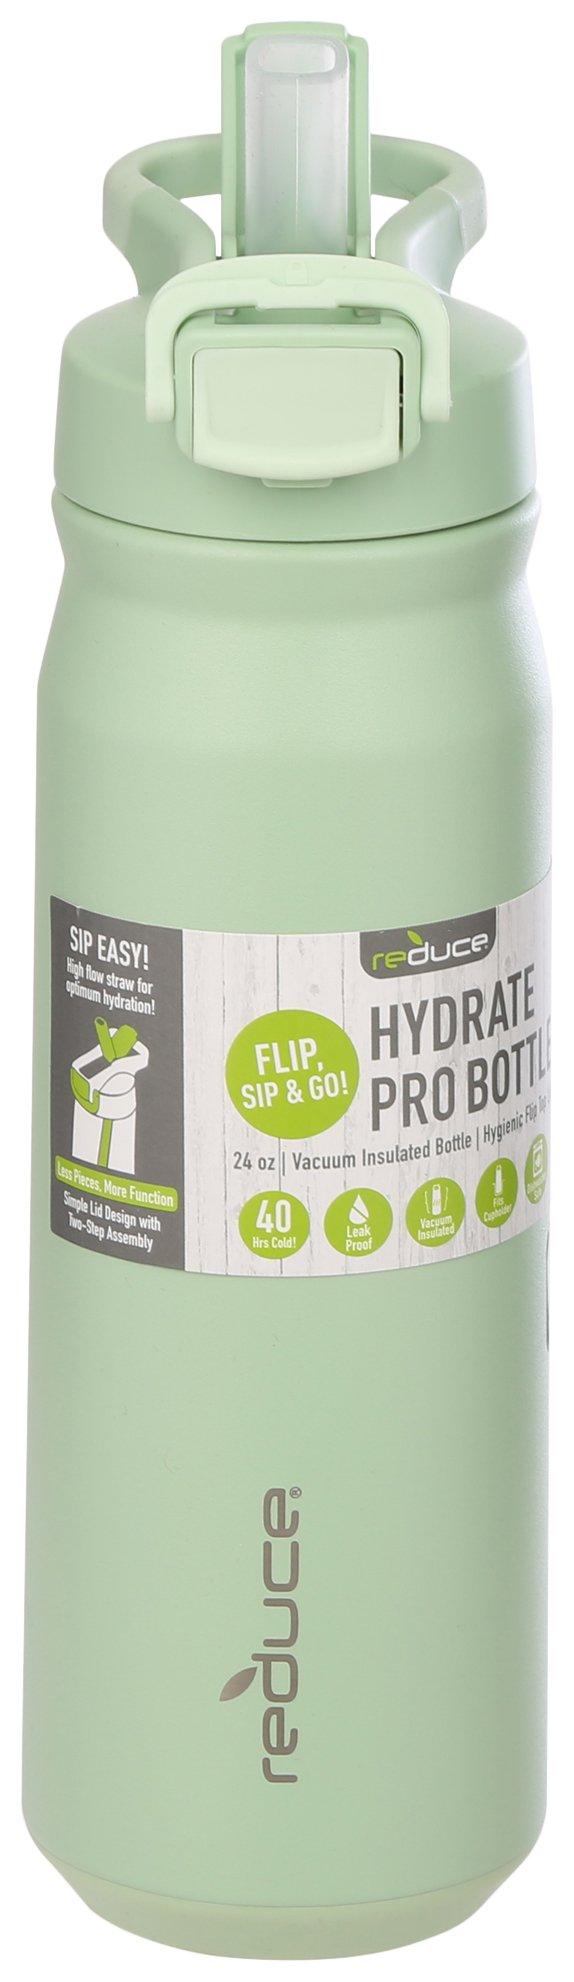 Reduce Hydrate Pro Water Bottle - Alien, 14 oz - City Market